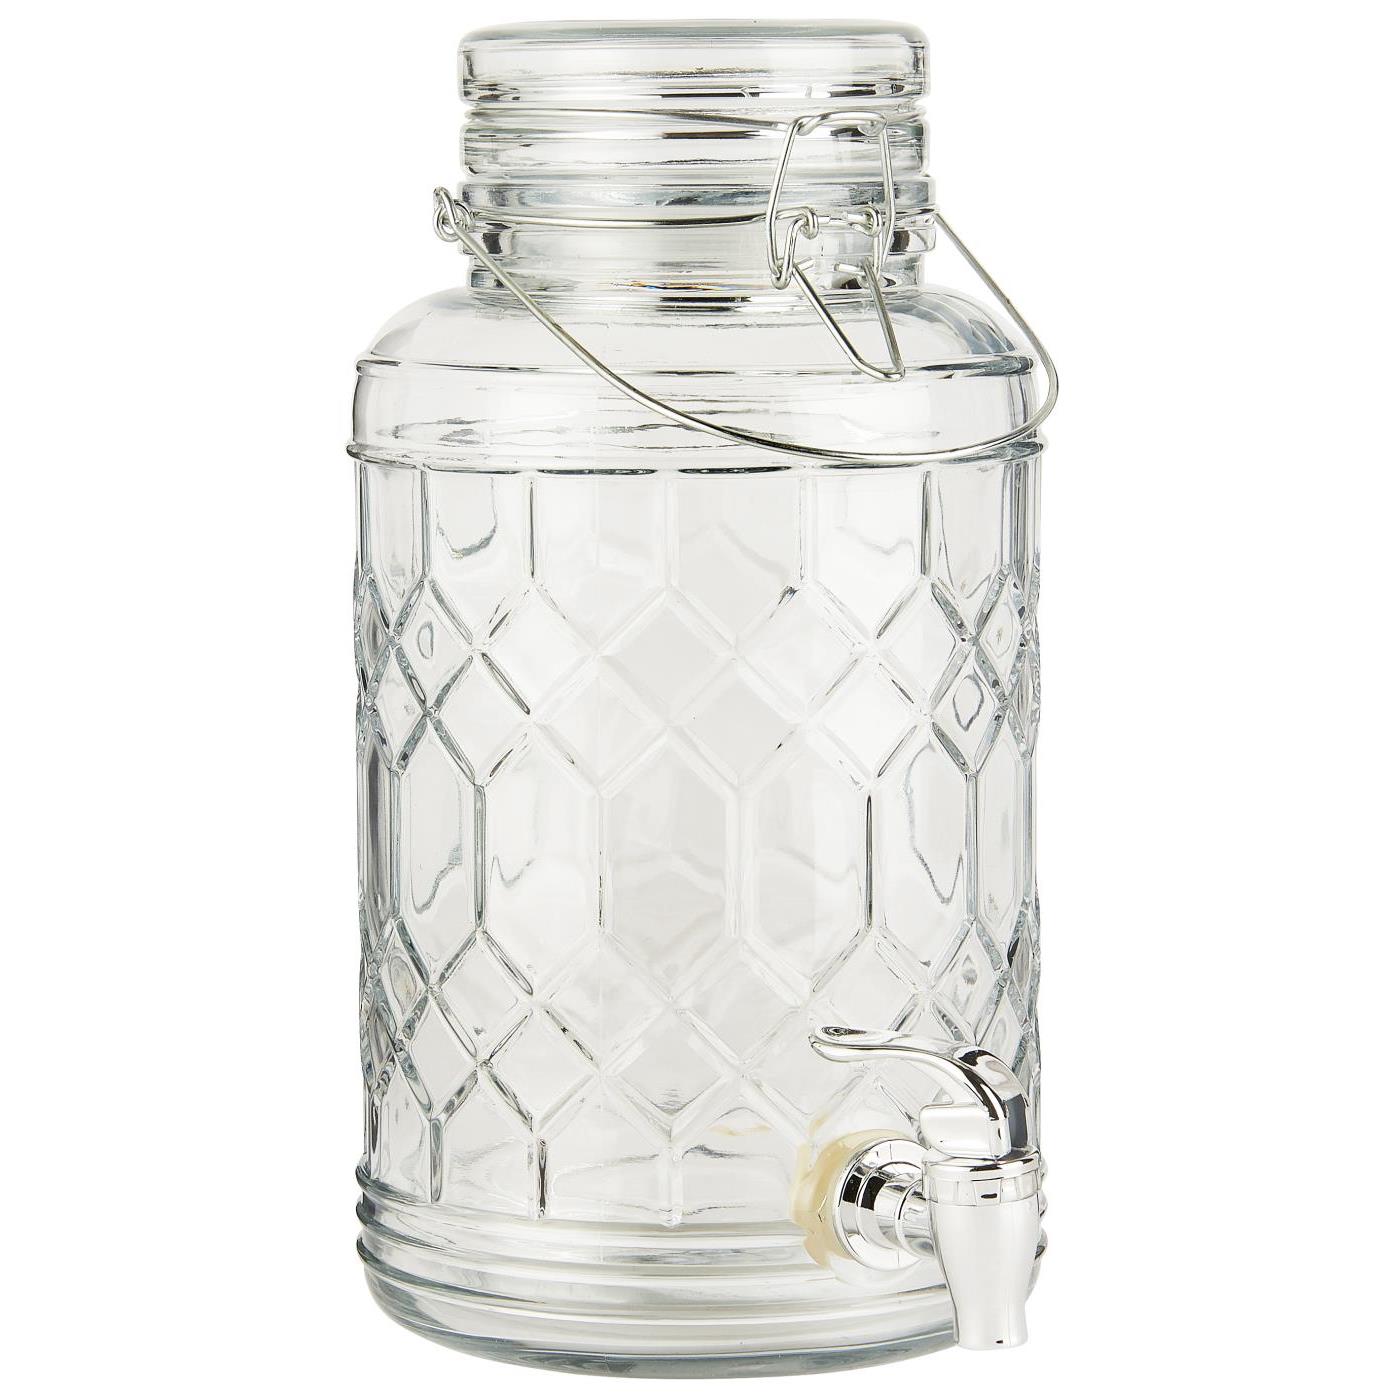 Getränkebehälter m/Muster im Glas 3,5 ltr - ib laursen